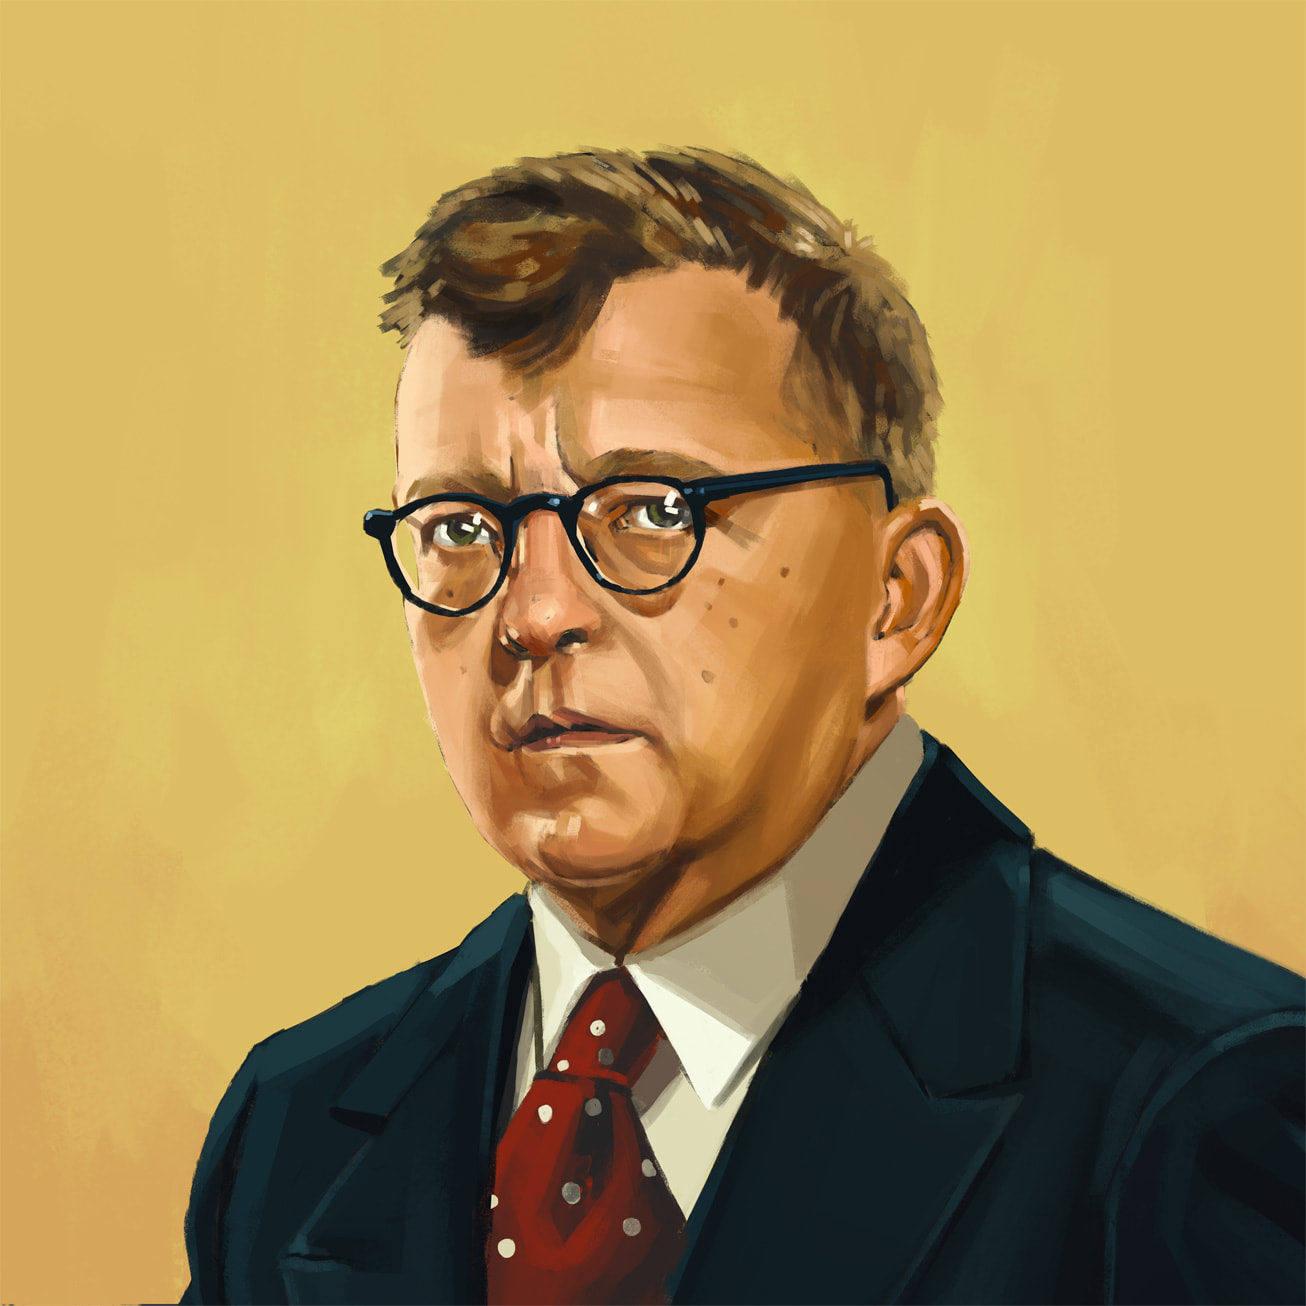 Et portrett av Shostakovich spesielt bestilt for Apple Music Classical